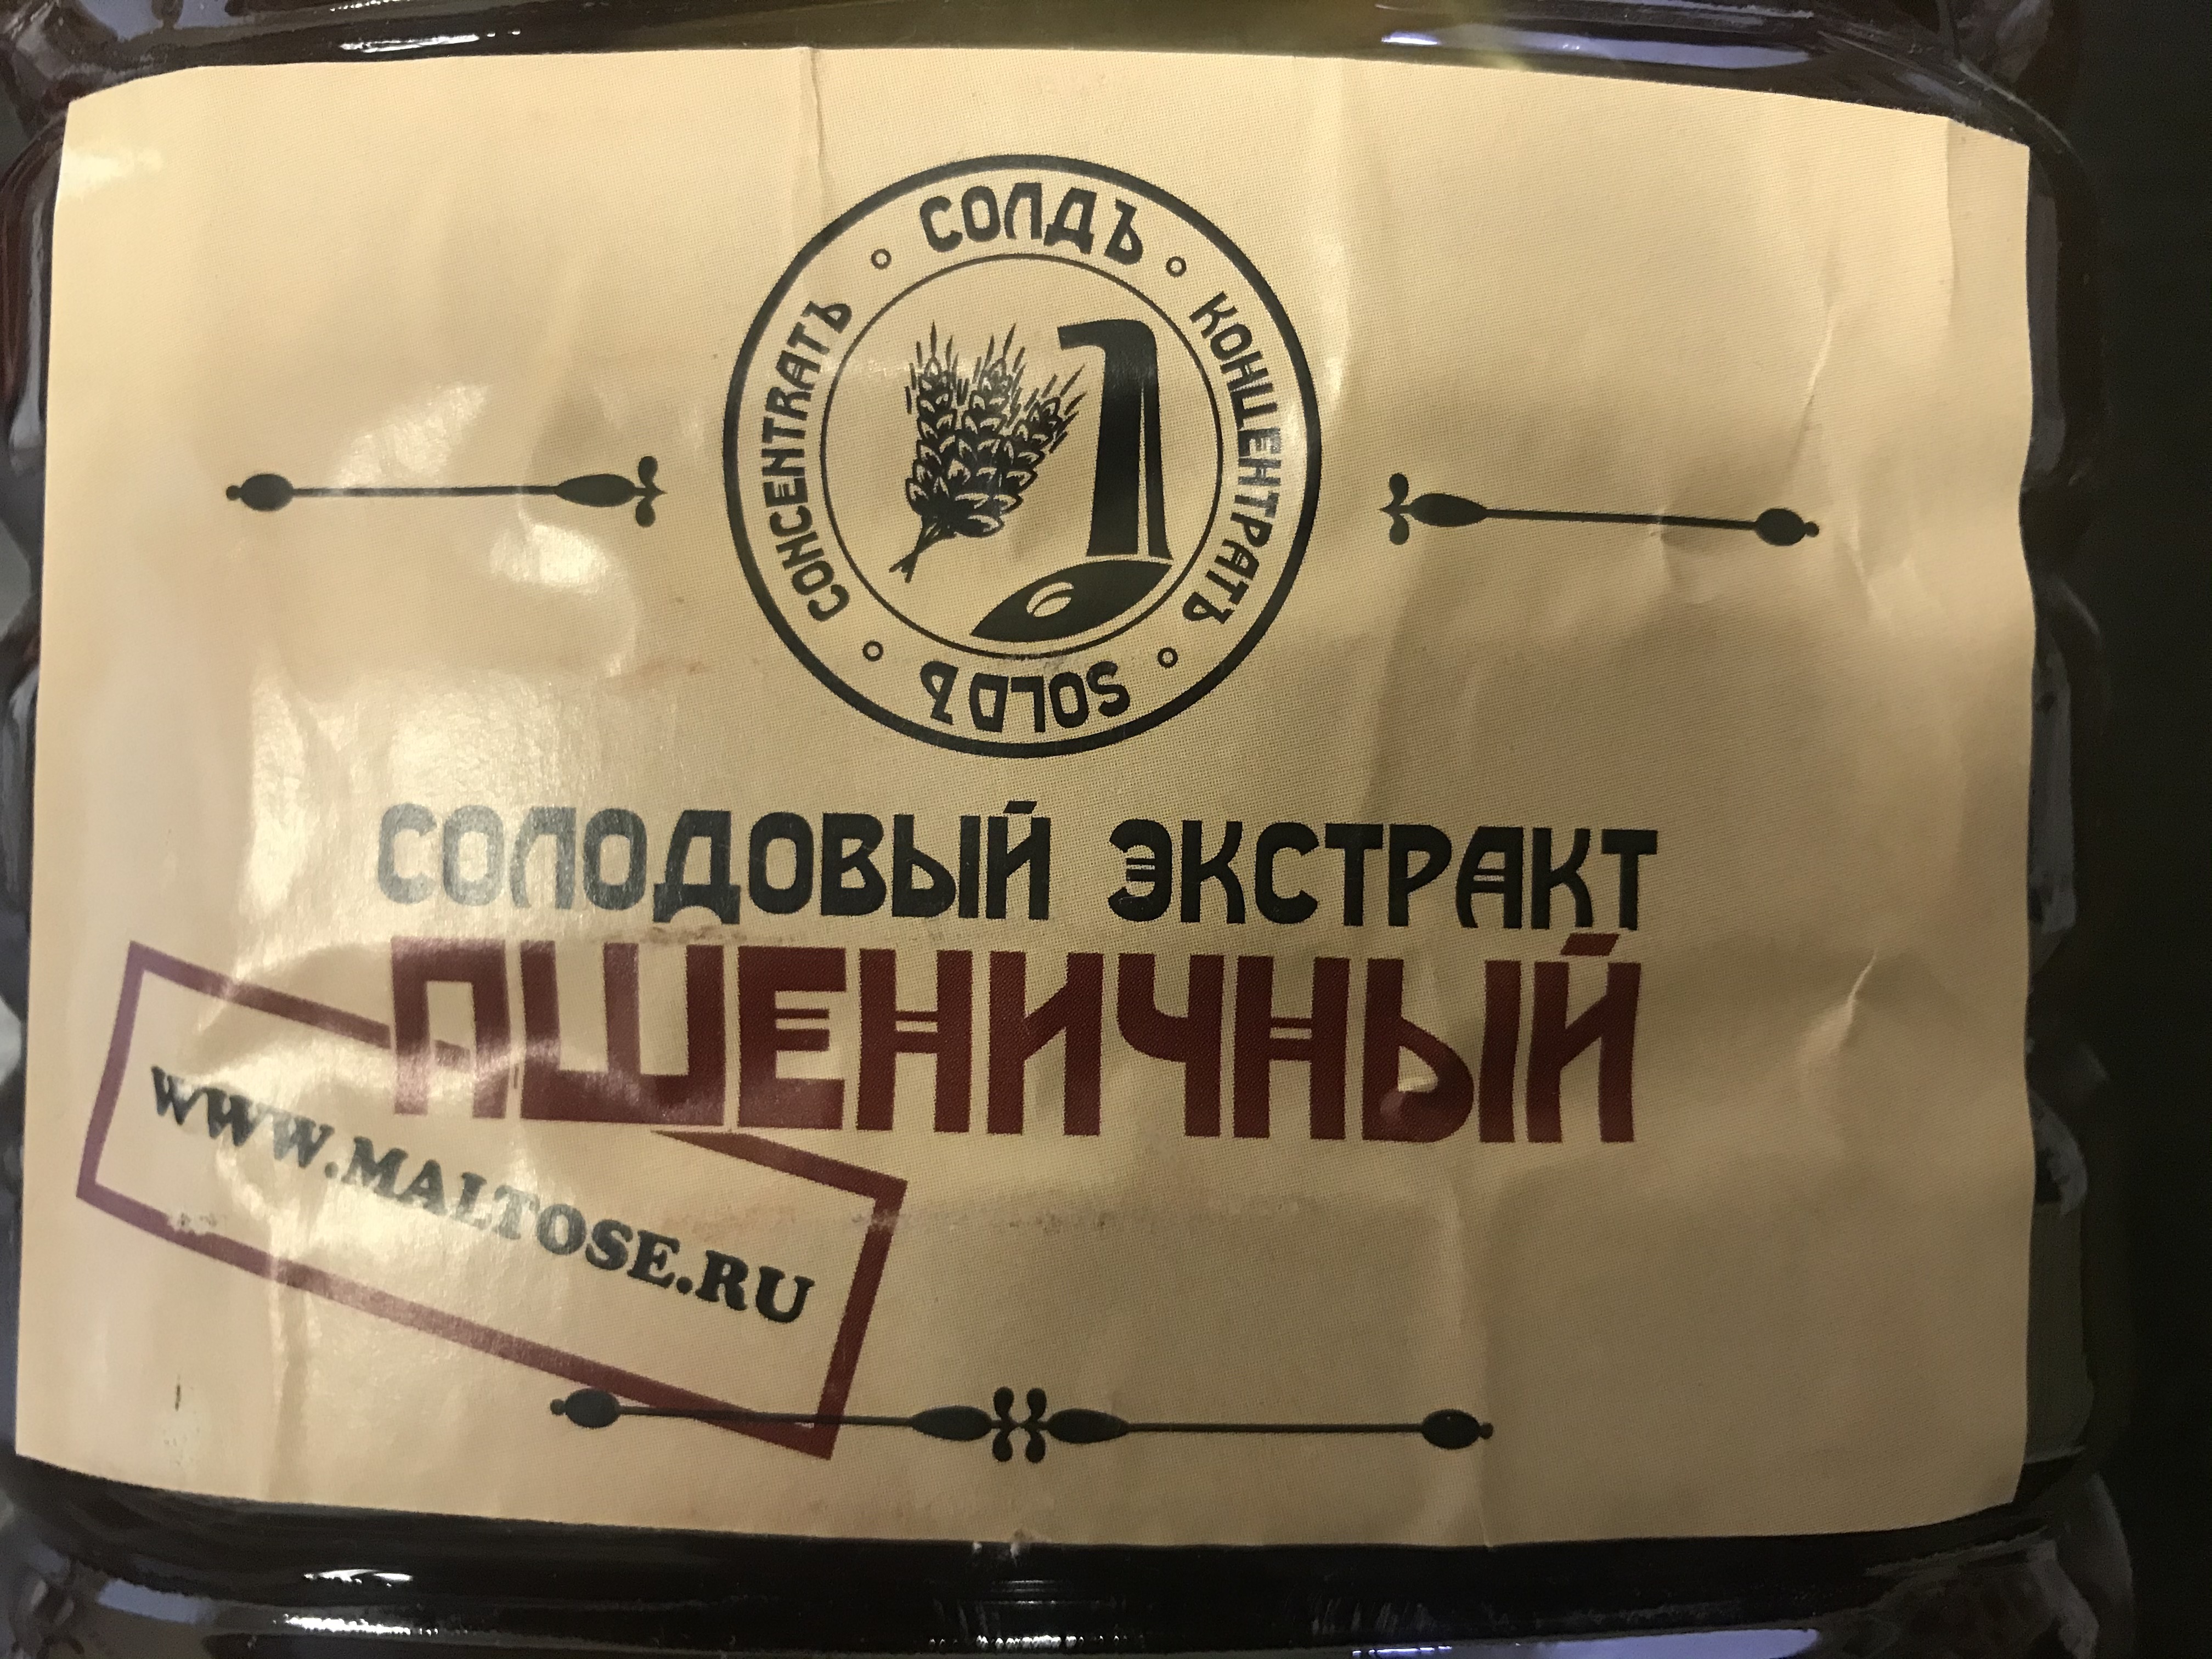 Производство солодовых концентратов в Воронеже на дружинников.